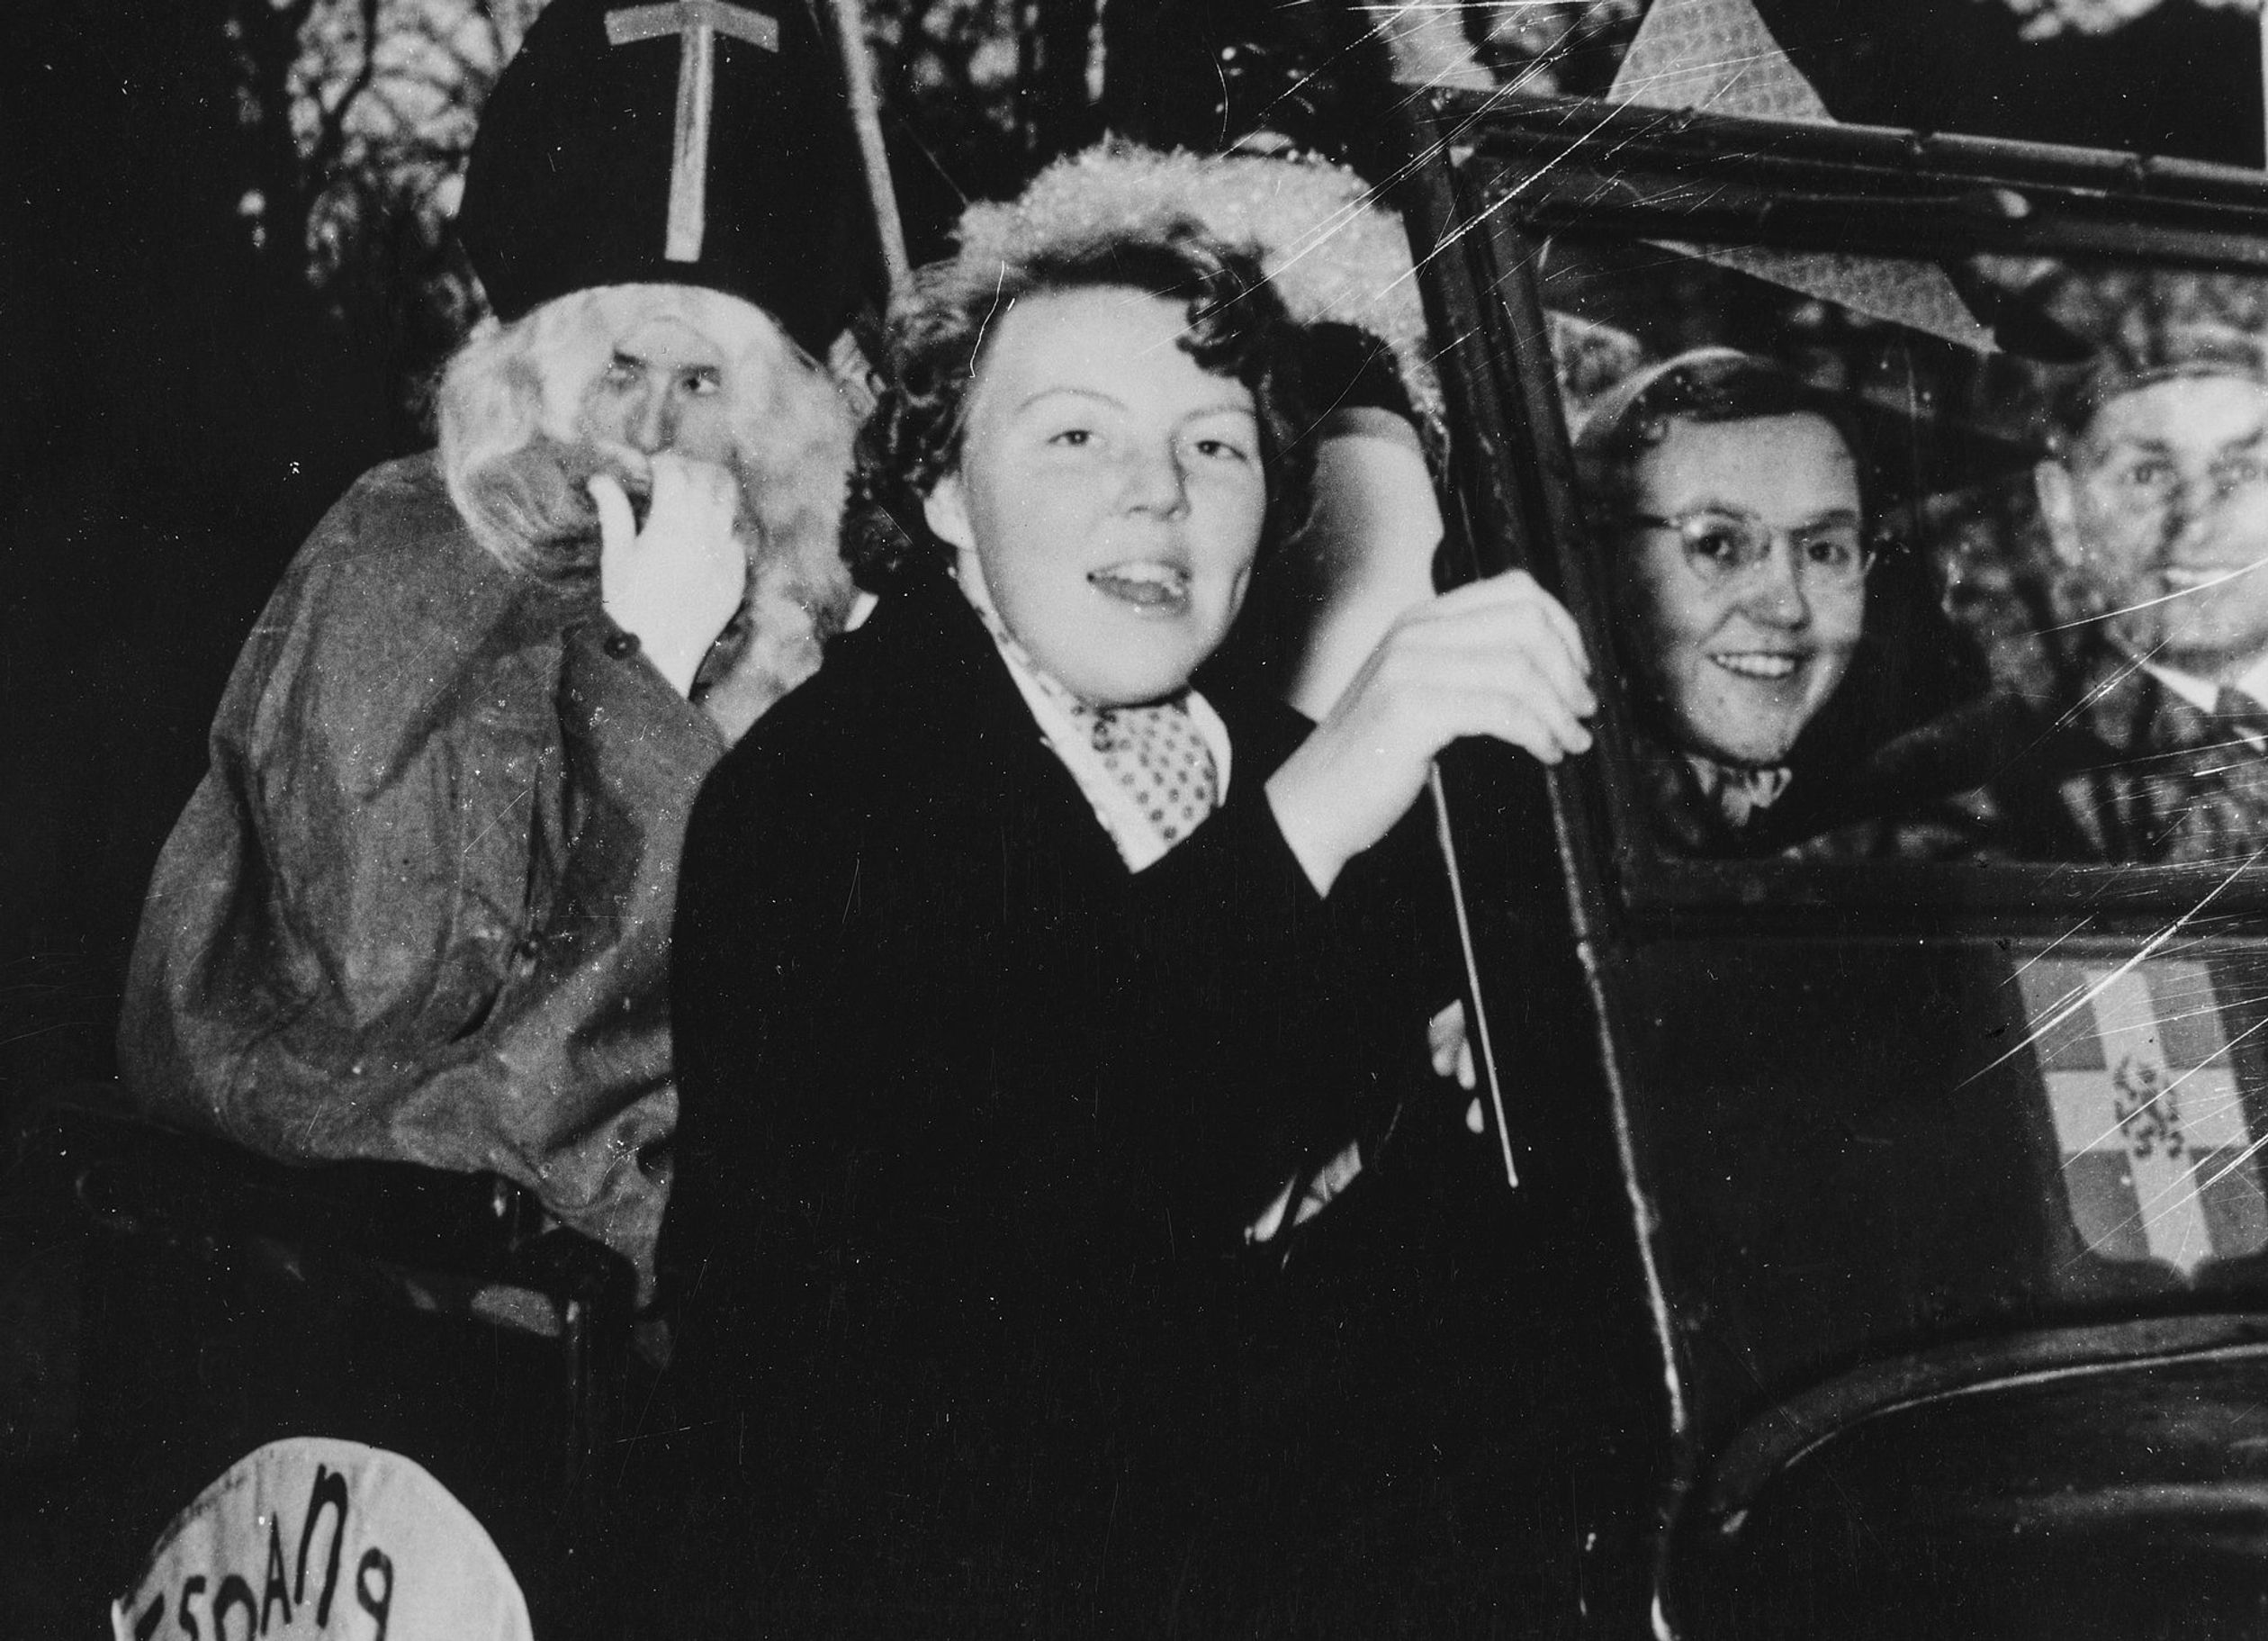 Het lijkt op deze foto wel of de baard van Sinterklaas bijna afzakt! Er wordt zo lijkt het ook heel hard gereden, prinses Beatrix houdt zich op deze foto uit 1954 goed vast aan de zijkant van de auto.